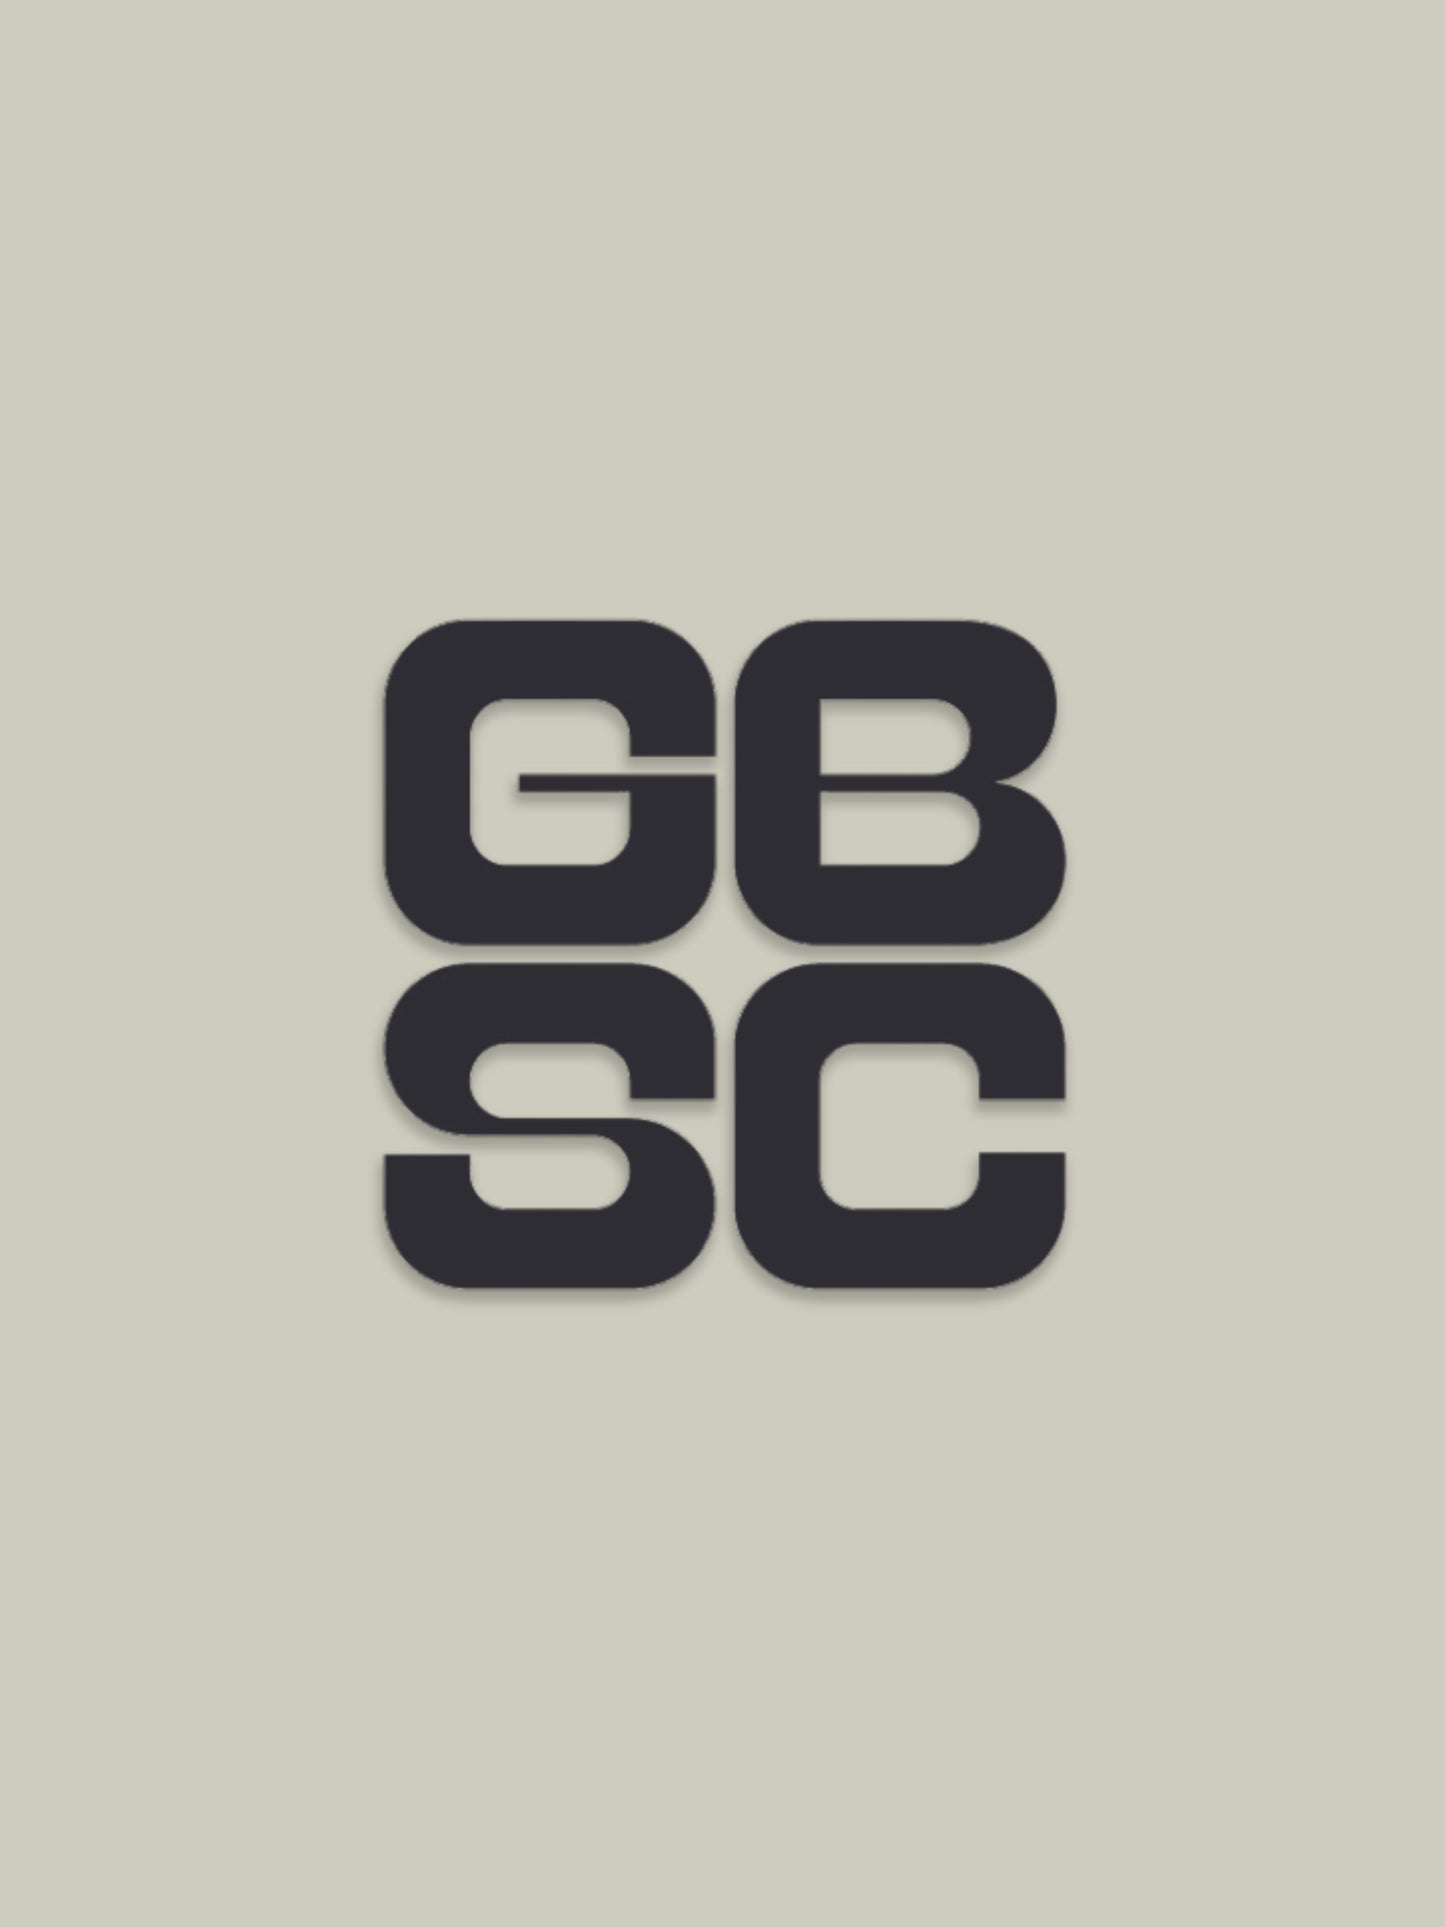 GBSC Surfboard Sticker